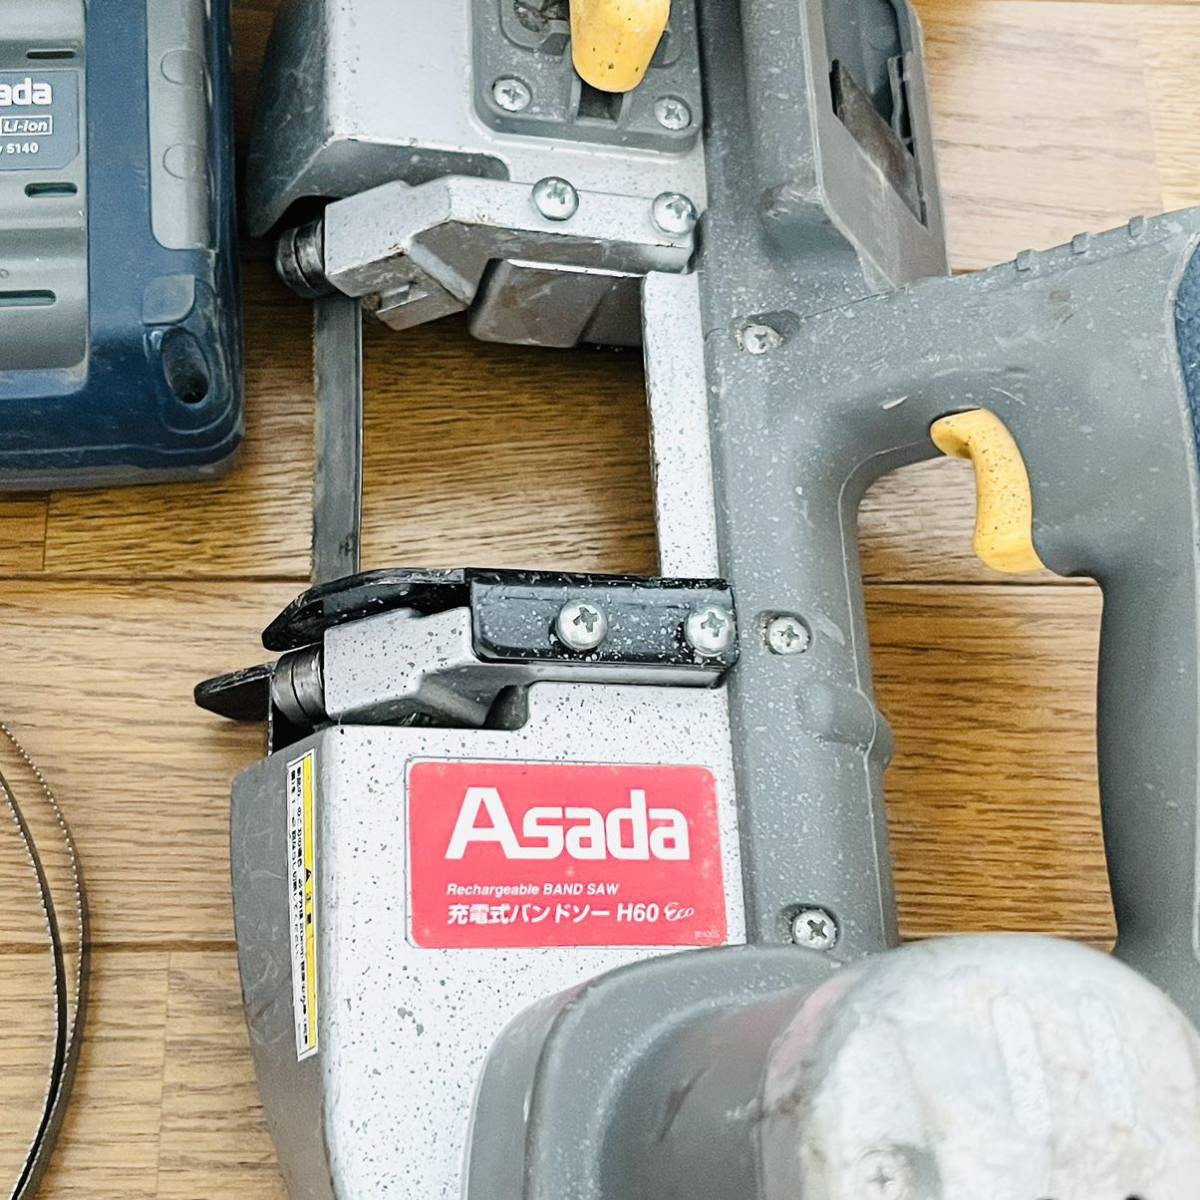 アサダ Asada Rechargeable BAND SAW 充電式バンドソーH60 のこ刃付き